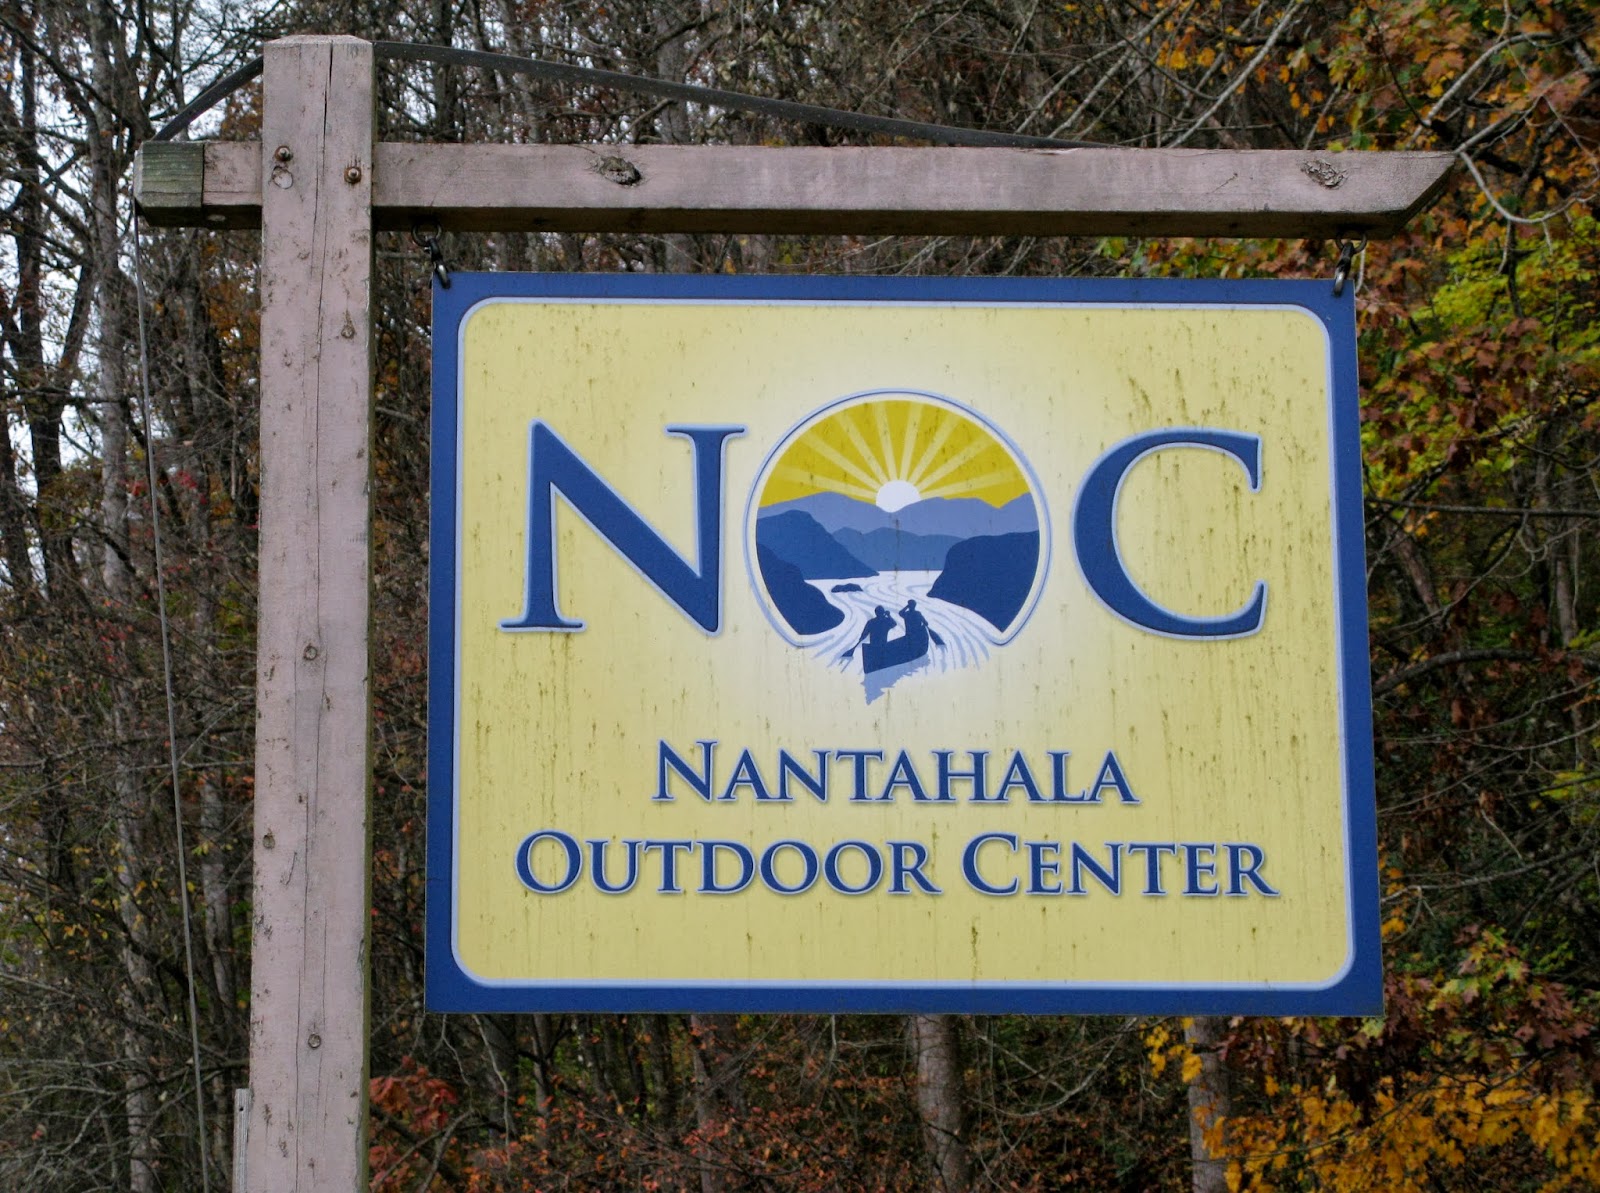 Nantahala Outdoor Center – Nantahala River, NC